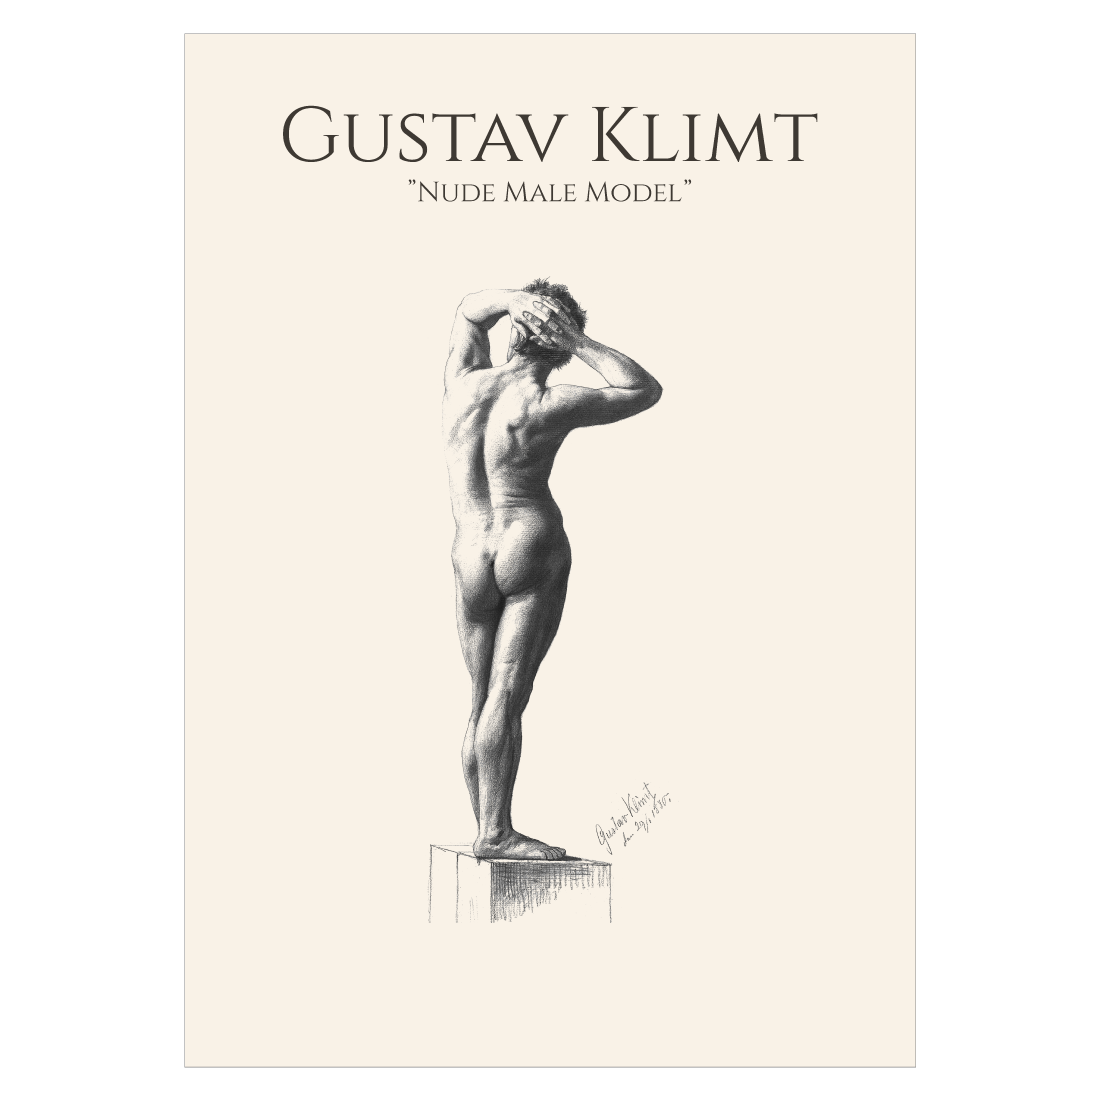 Kunstplakat med Gustav Klimts skitse "Nude Male Model"